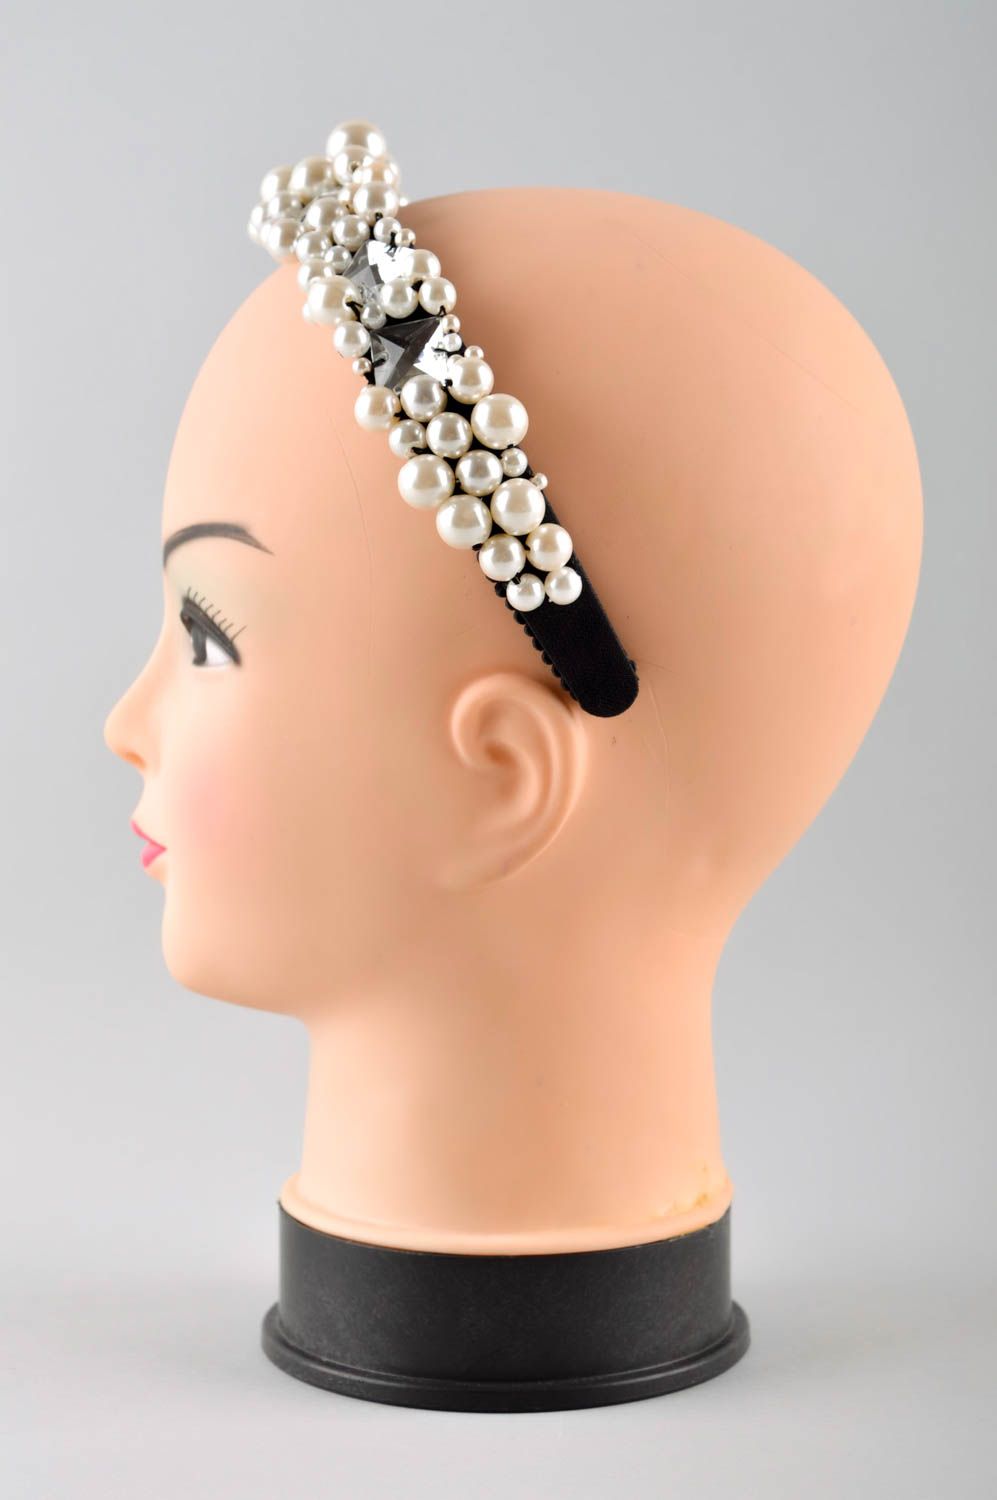 Аксессуар для волос ручной работы обруч на голову женский аксессуар модный фото 3